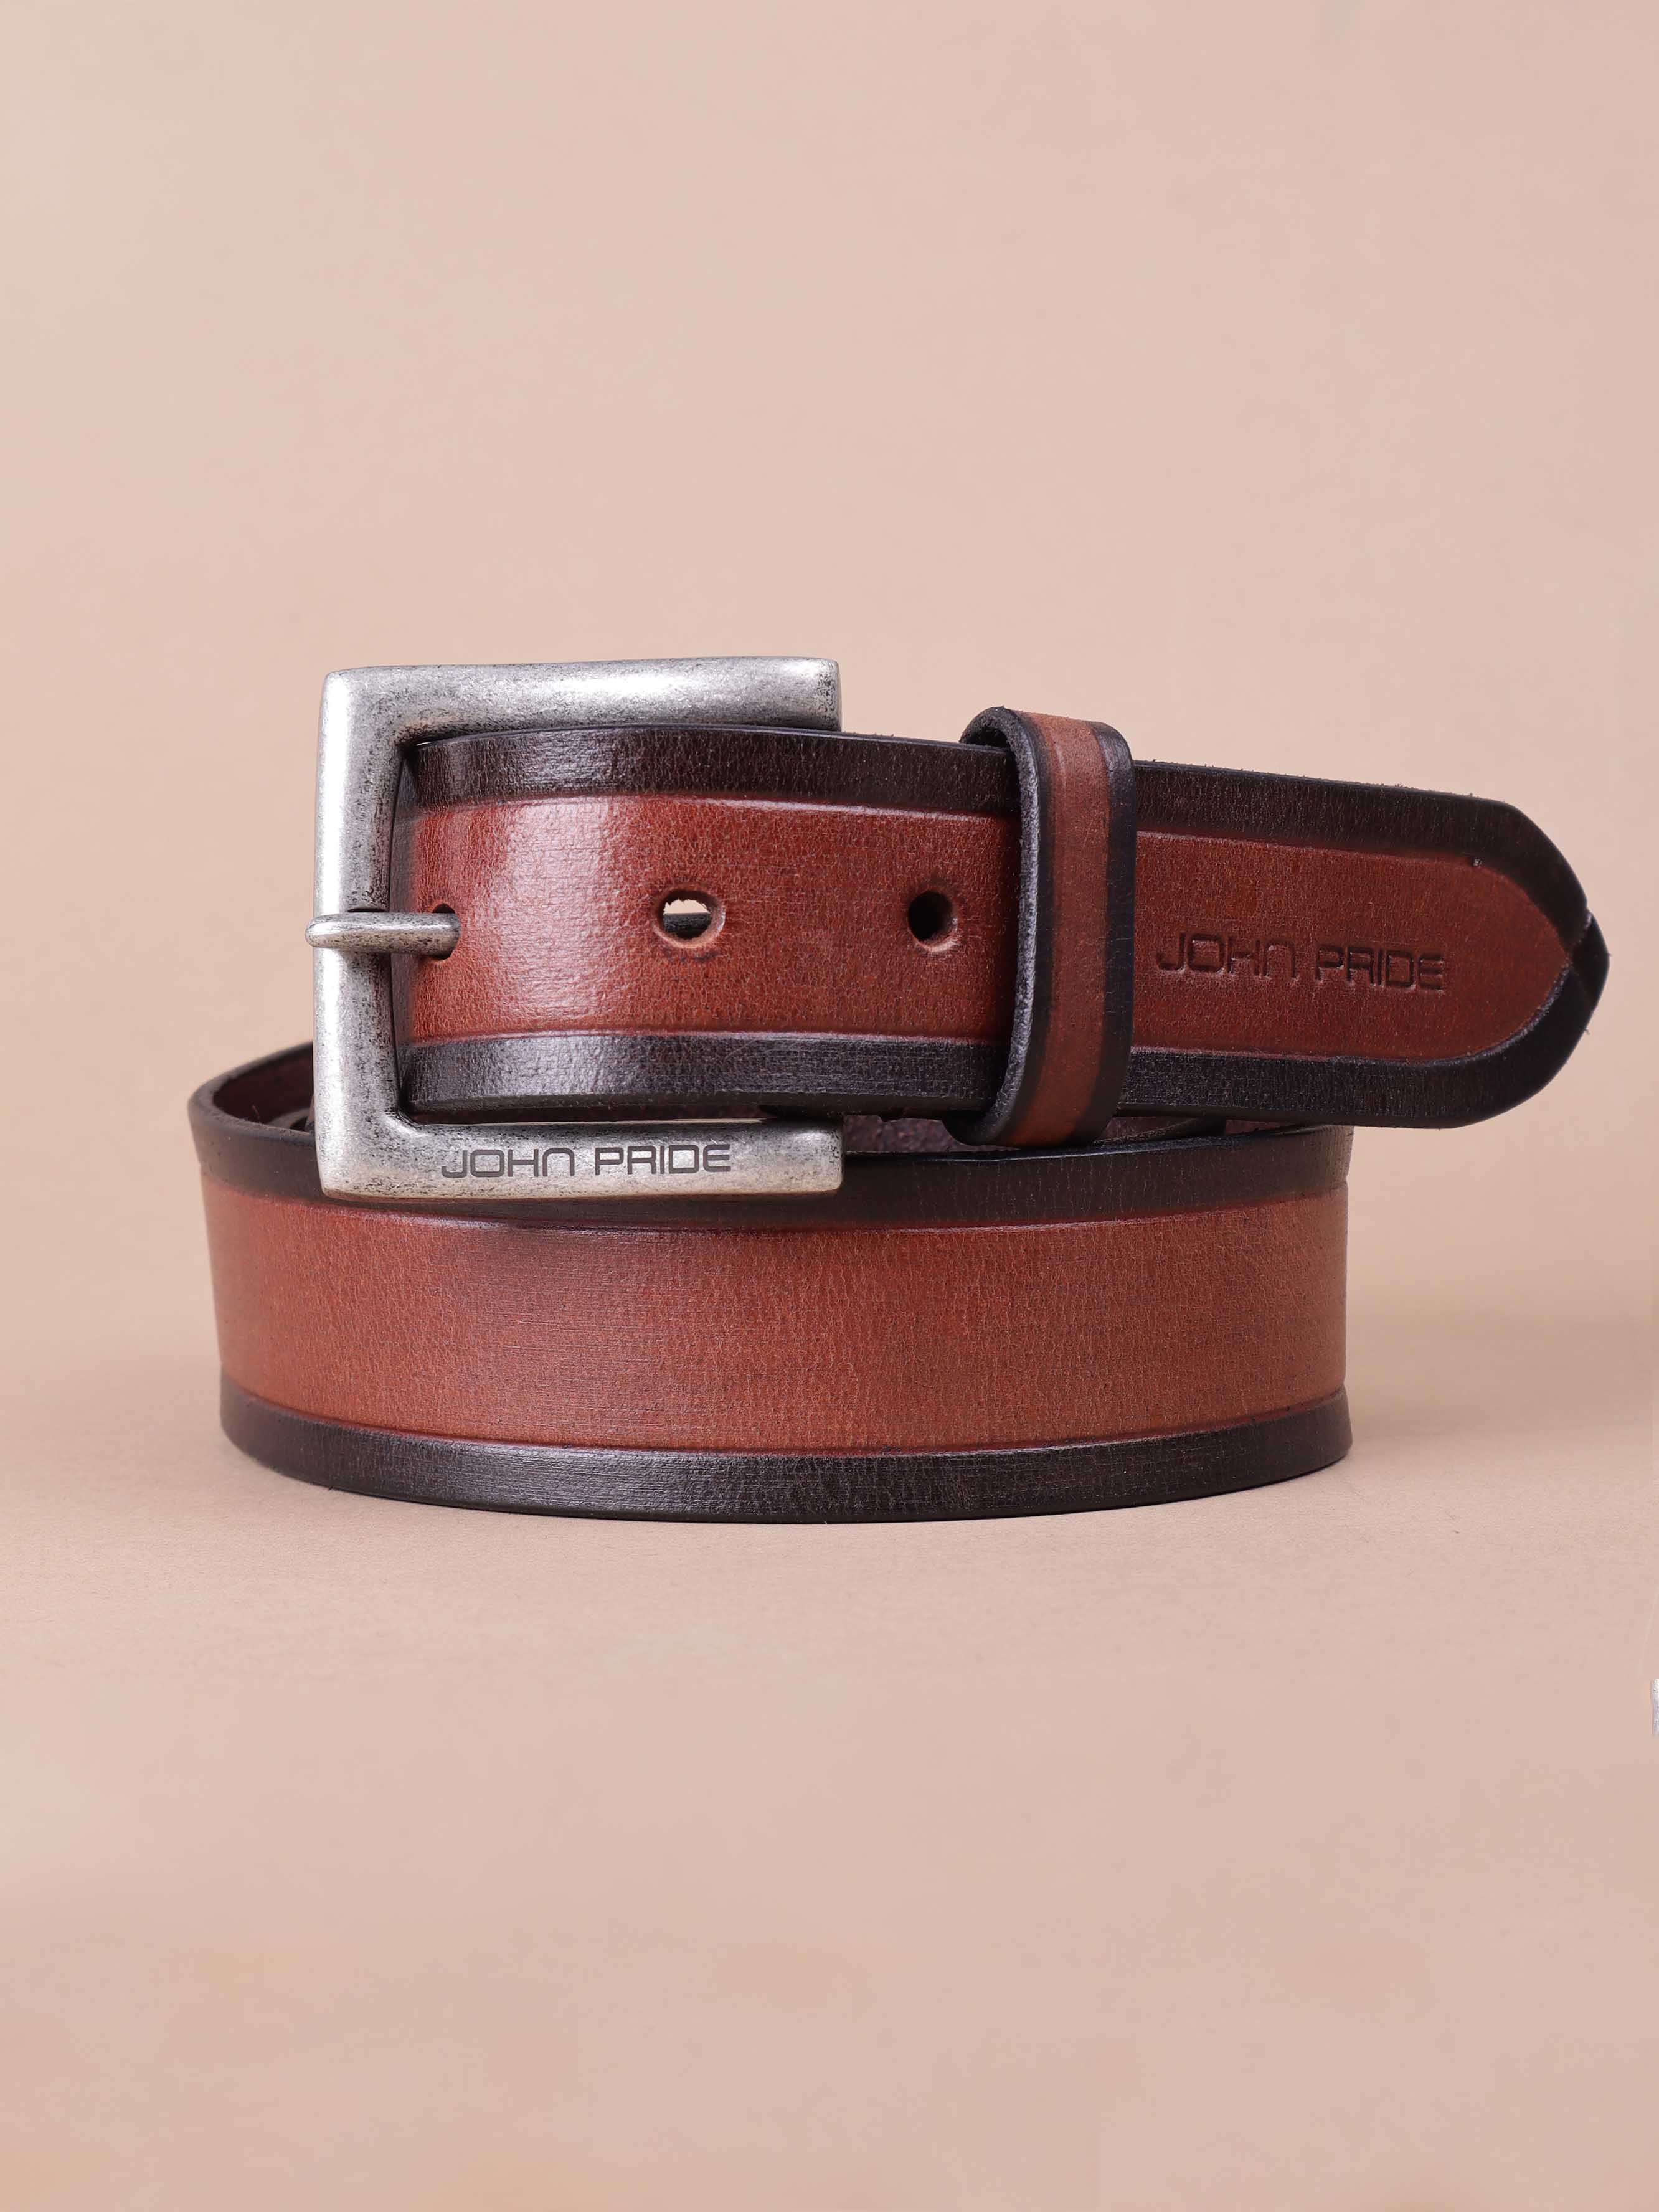 accessories/belts/JPBT1003/jpbt1003-4.jpg